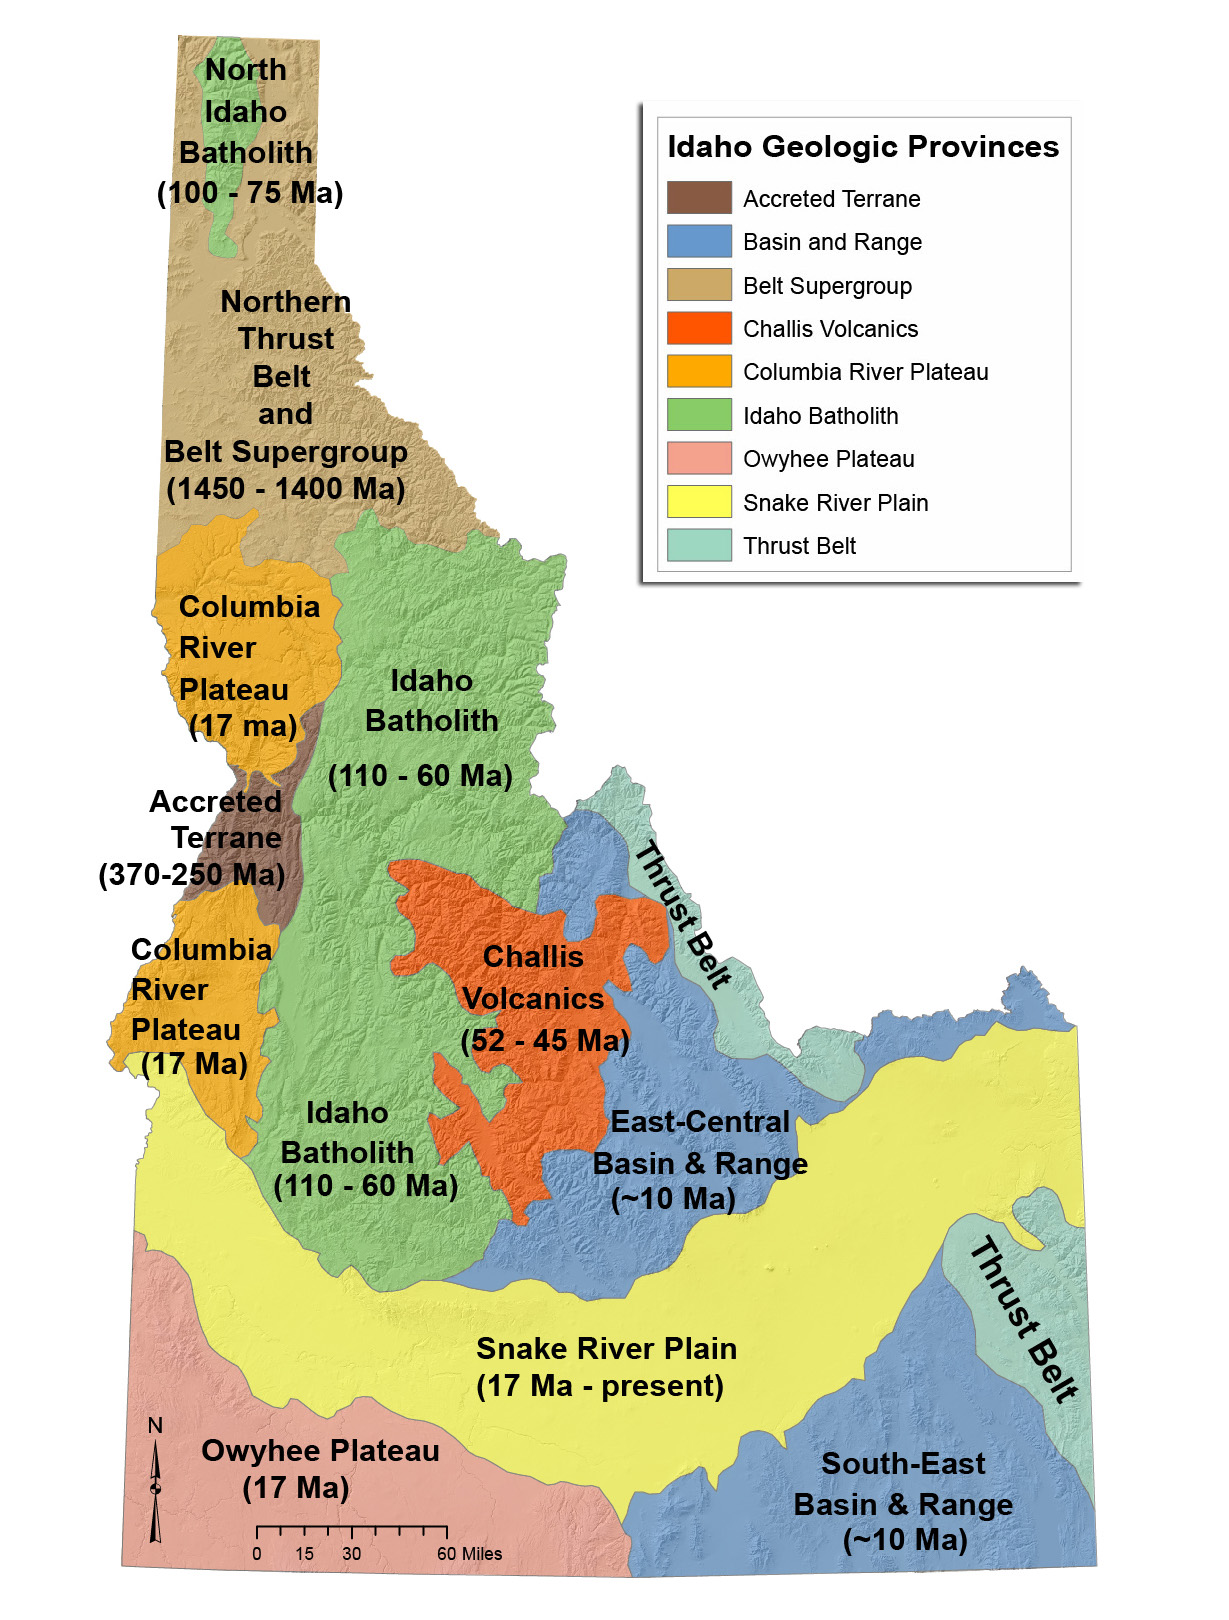 Geologic provinces of Idaho